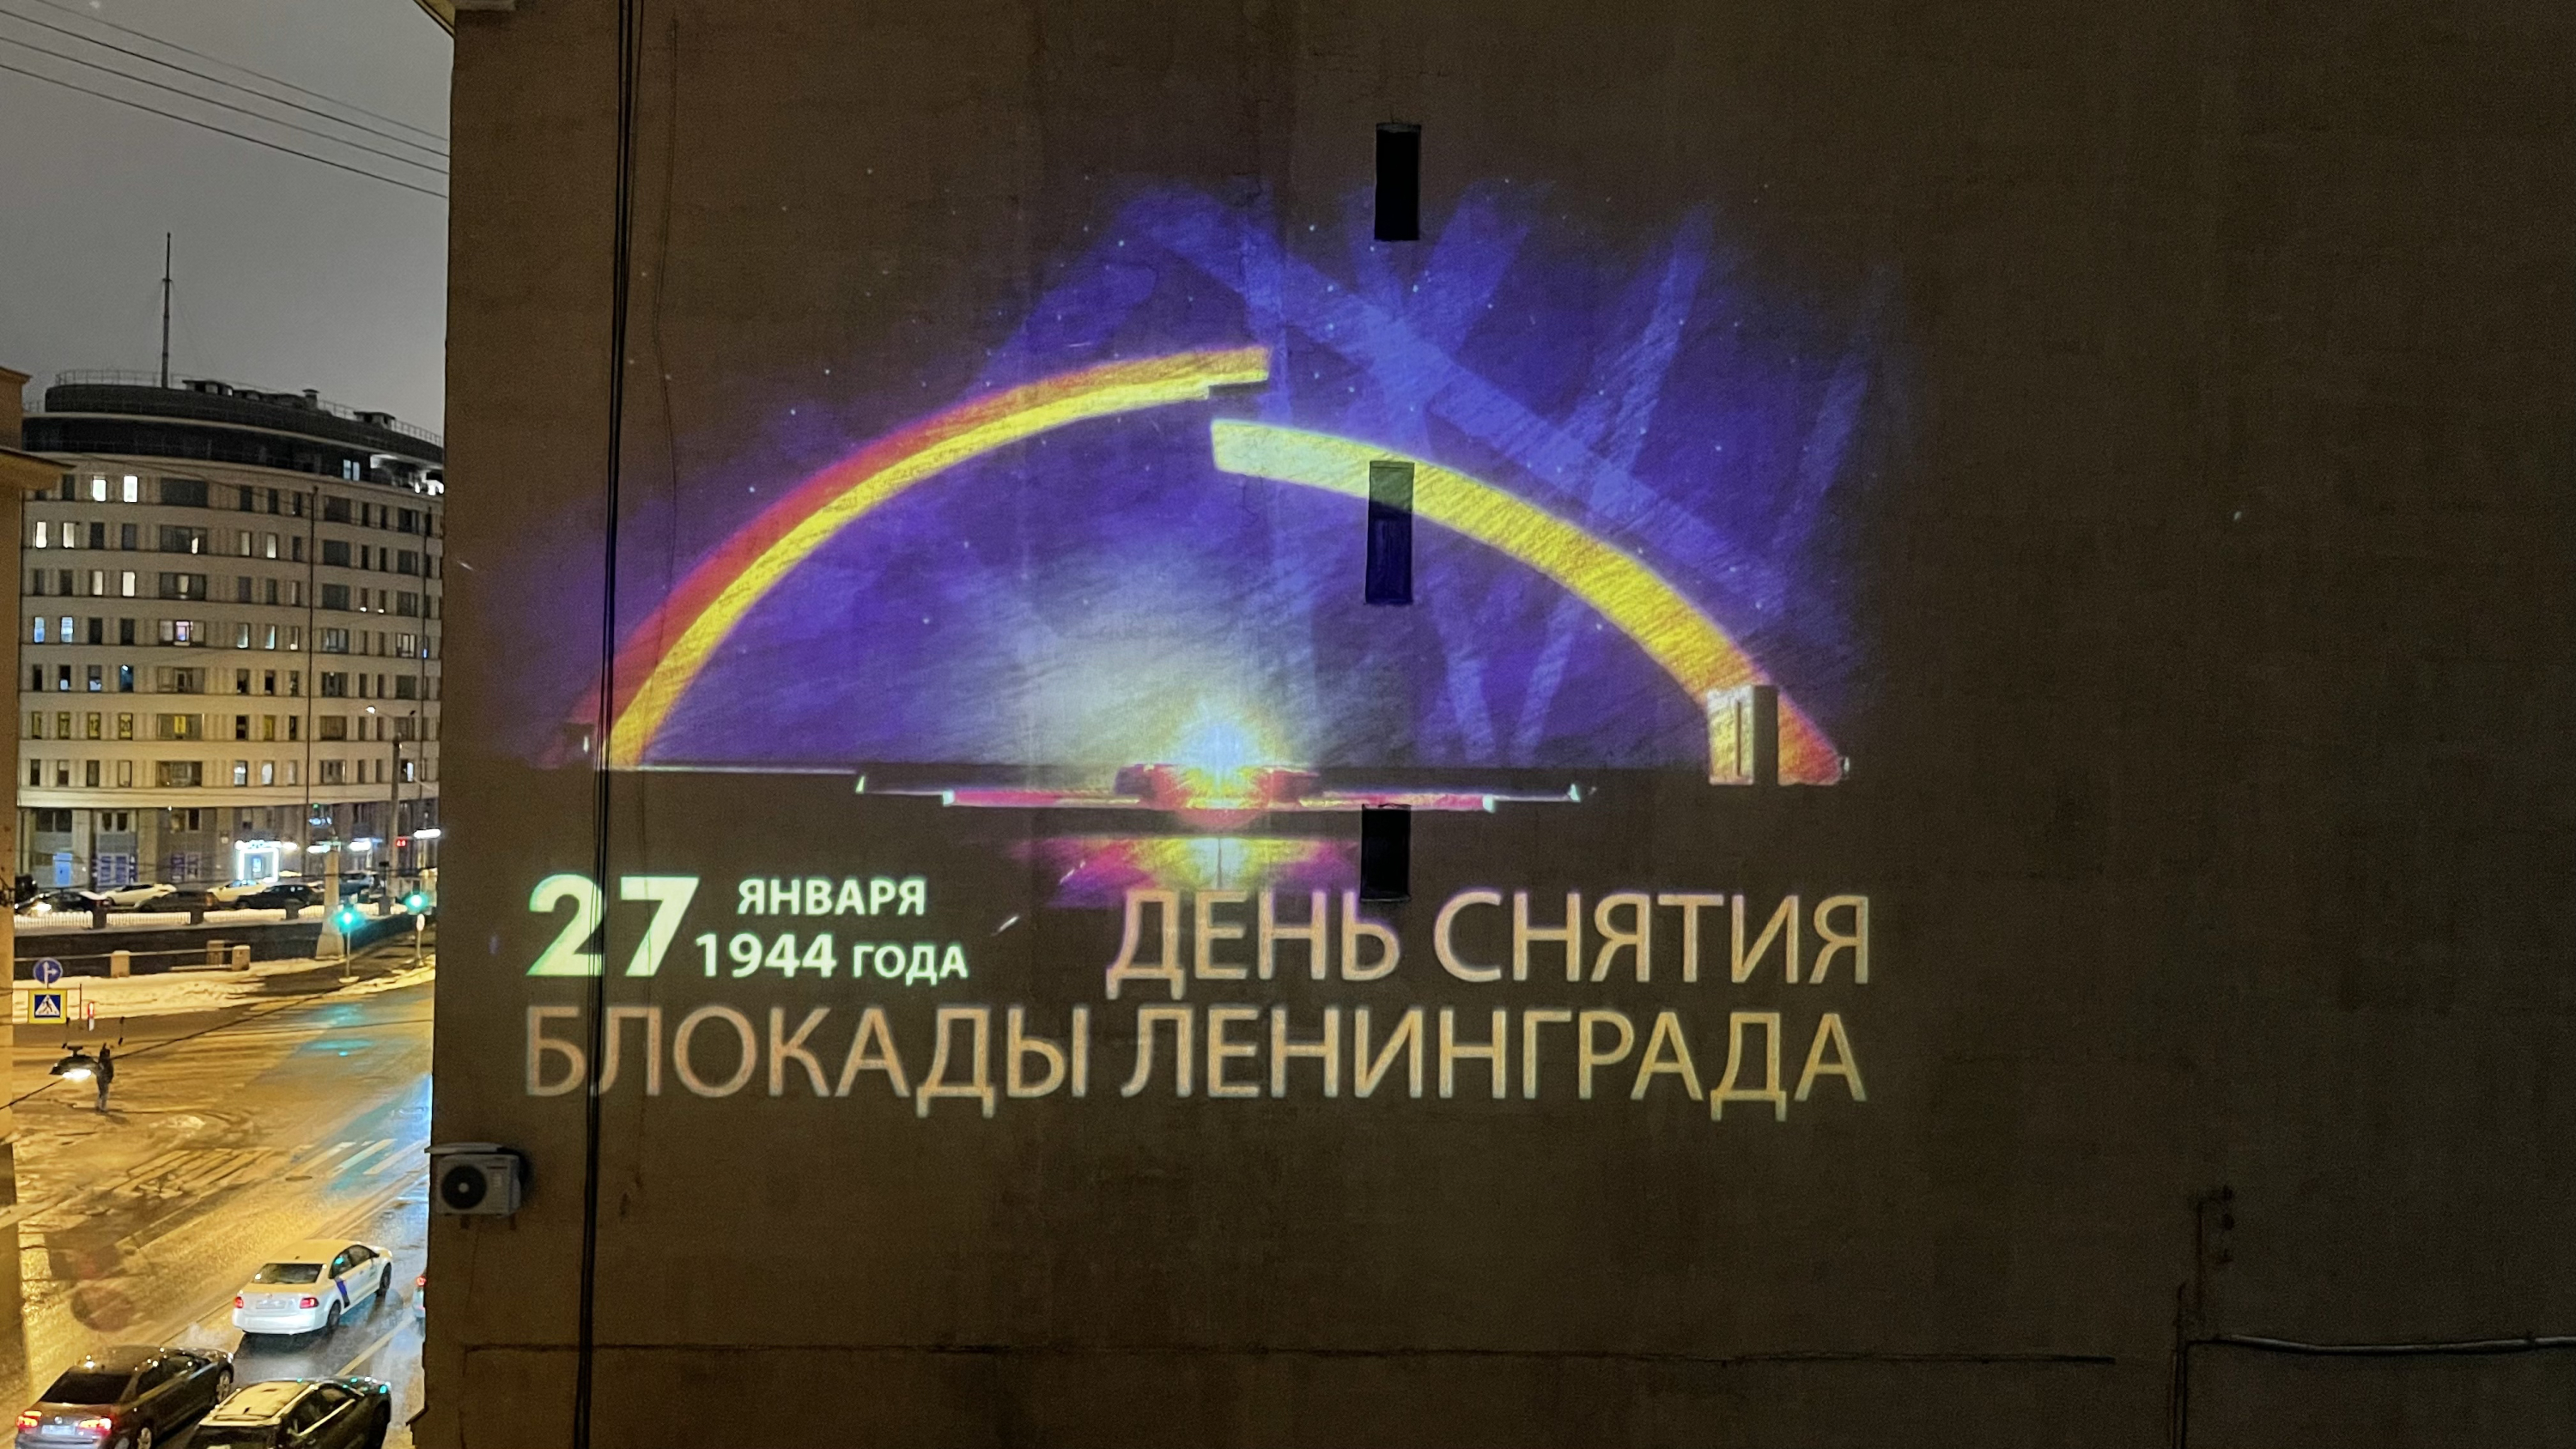 В честь Ленинградской Победы световые проекции украсили фасады зданий1